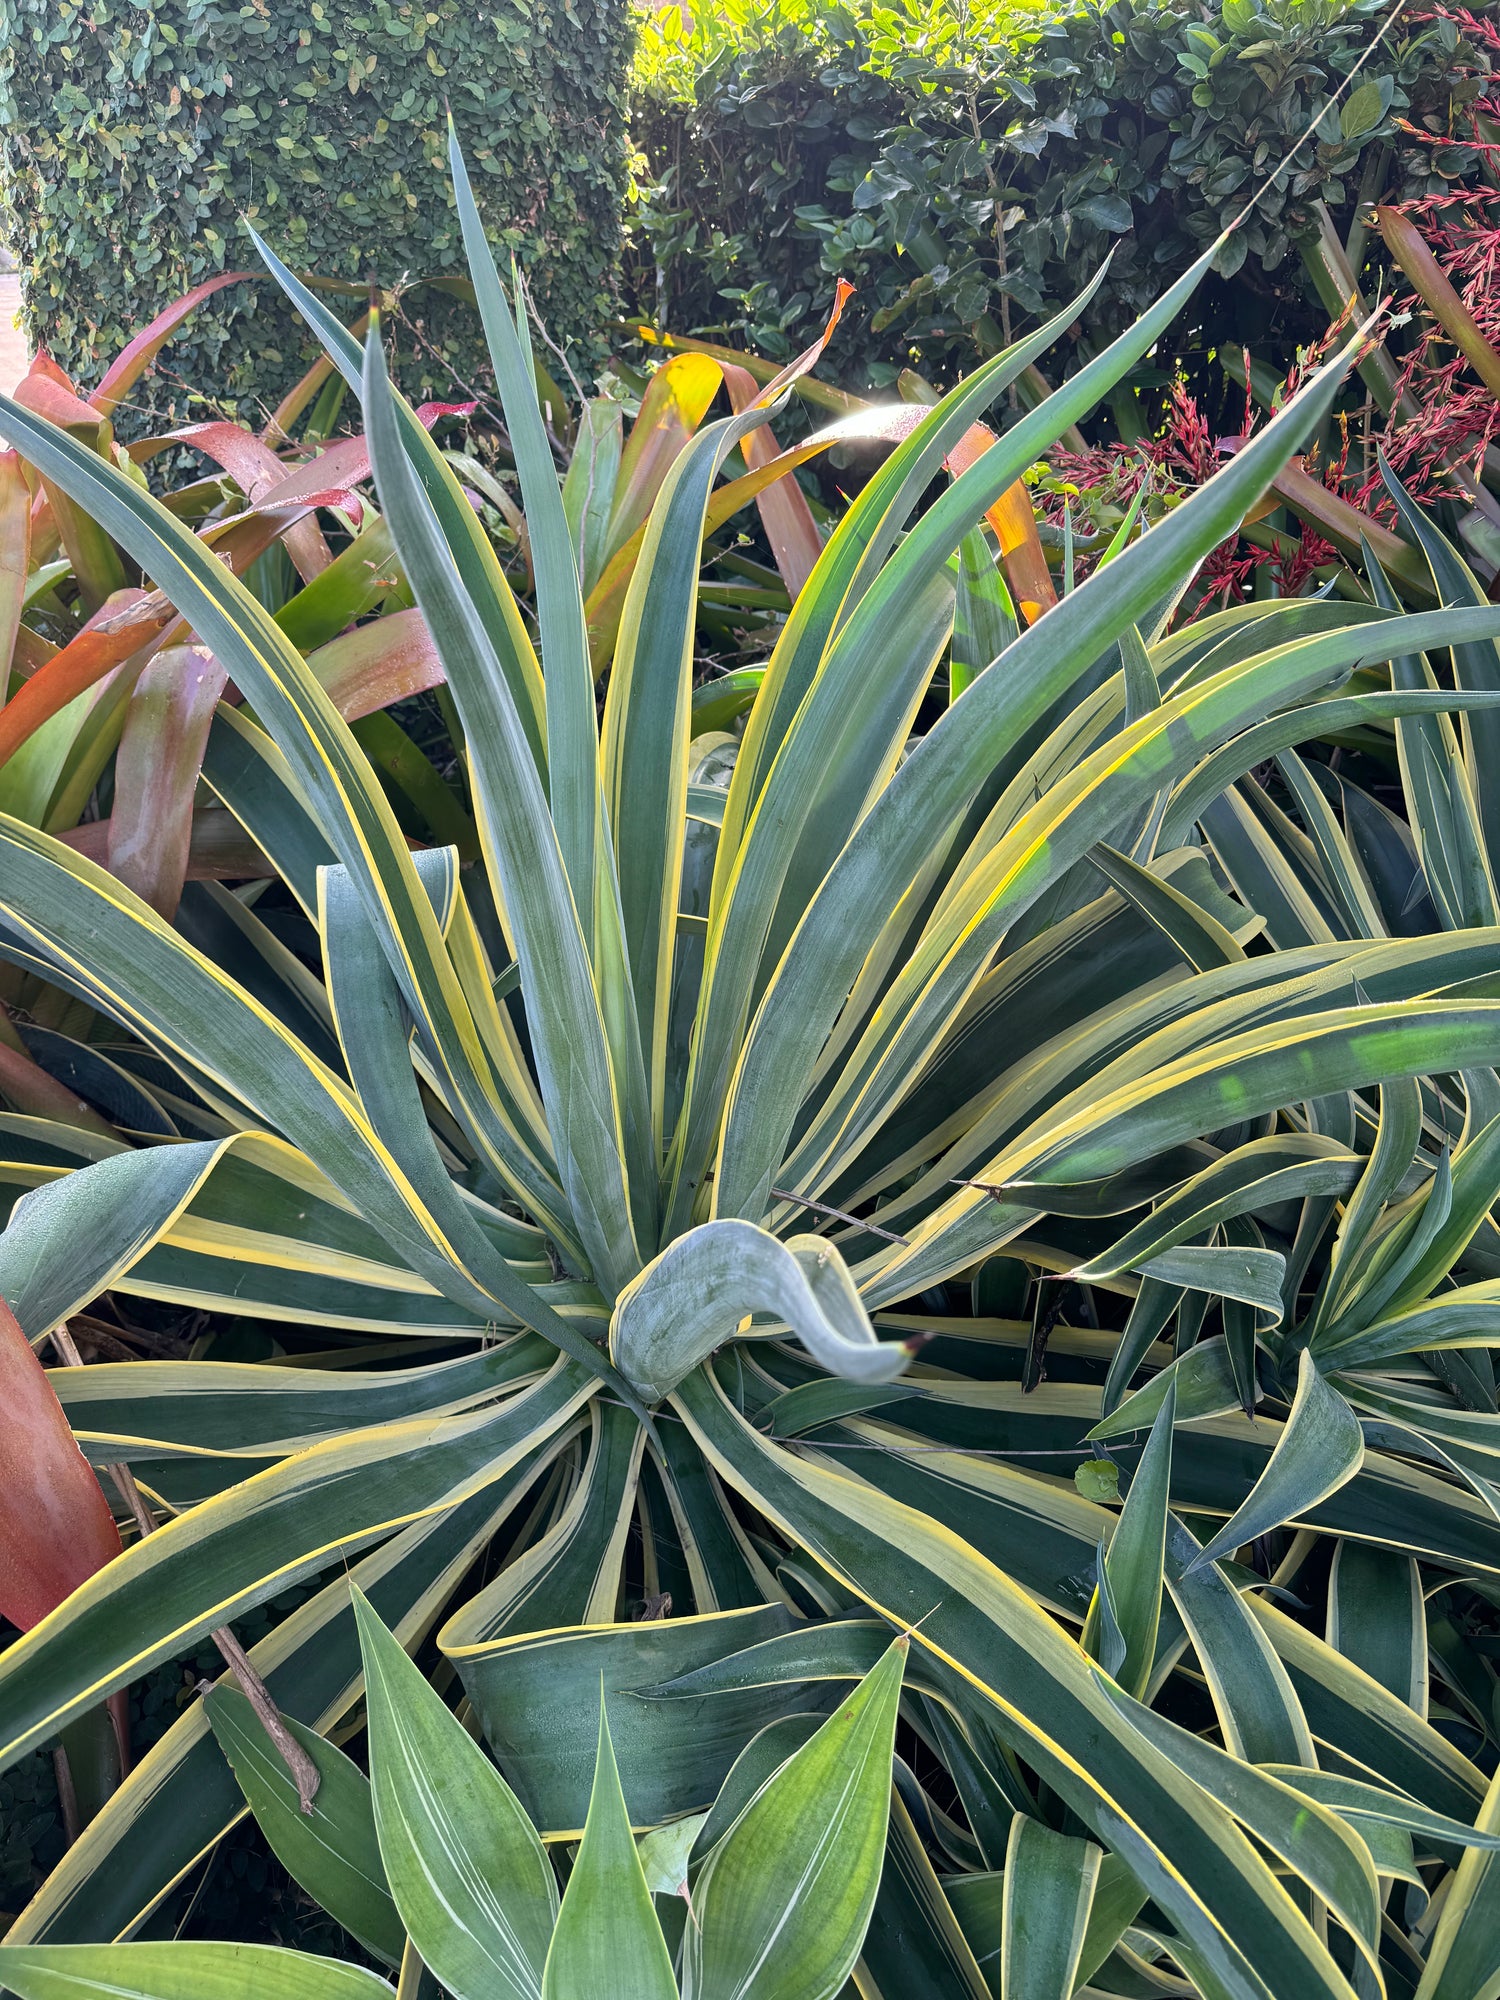 Agave Desmettiana Dwarf Century Plant